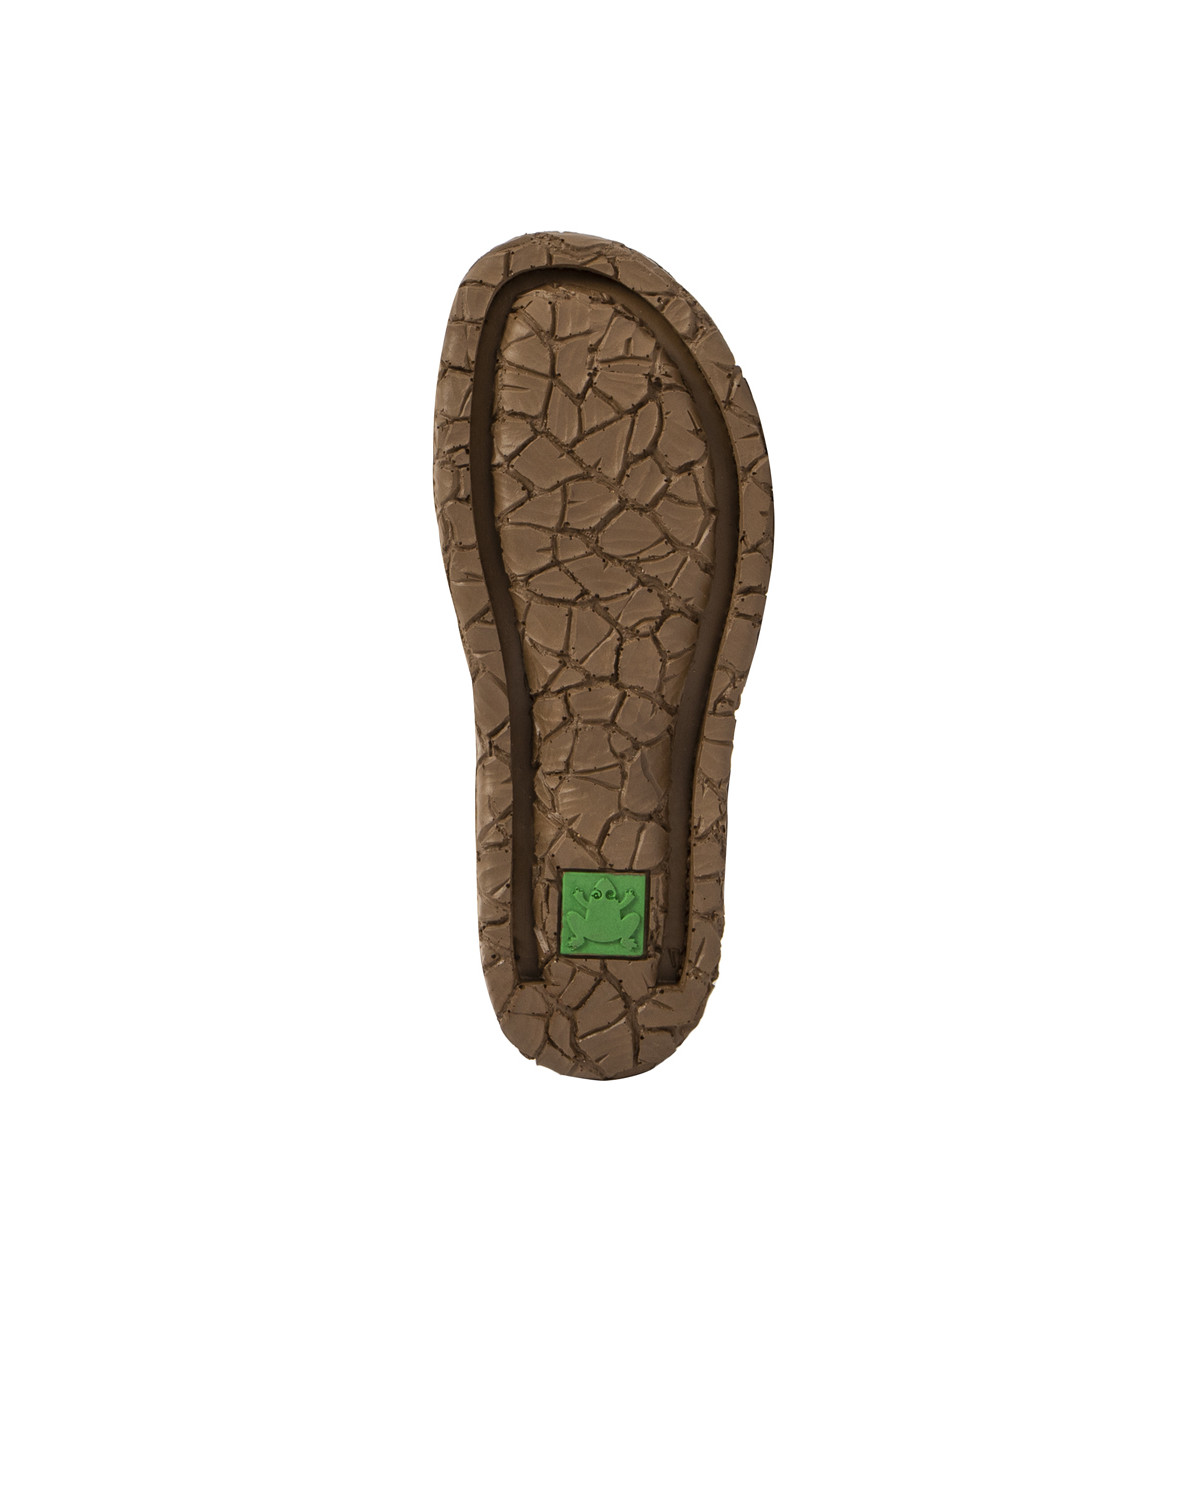 Sandales confortables plates en cuir à scratch et semelles ergonomique - Taupe - El naturalista